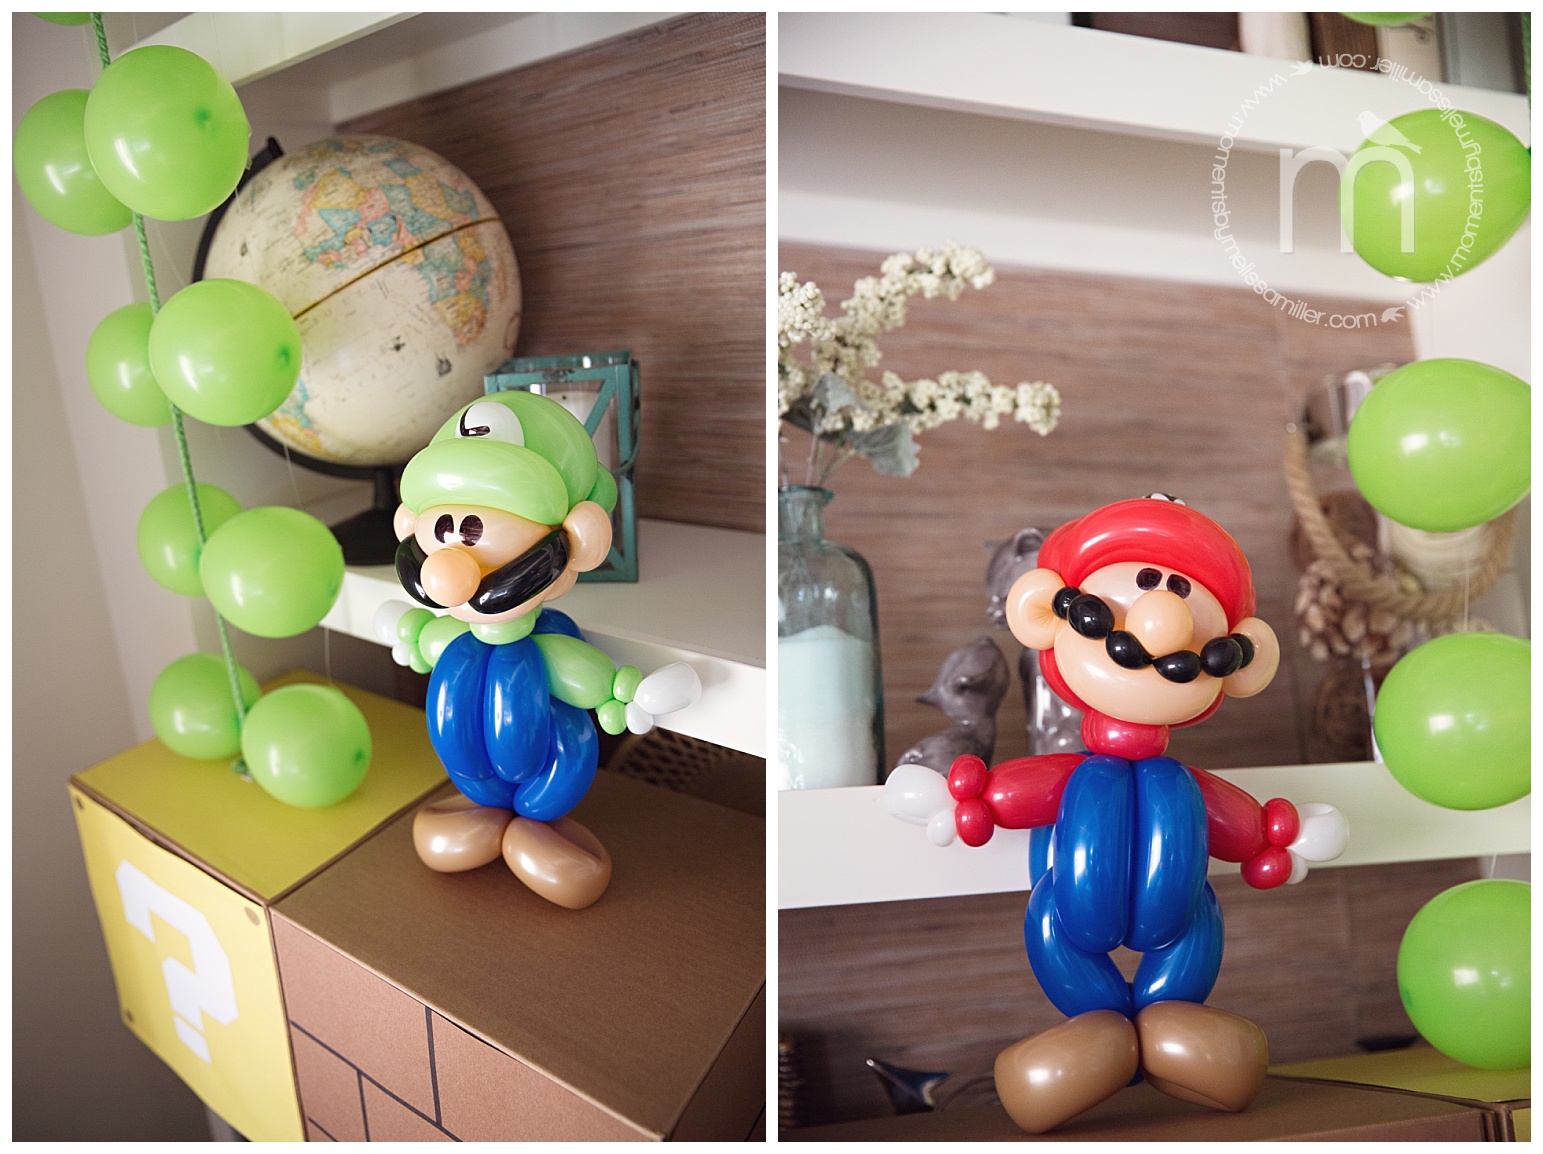 Ballon métallique Super Mario